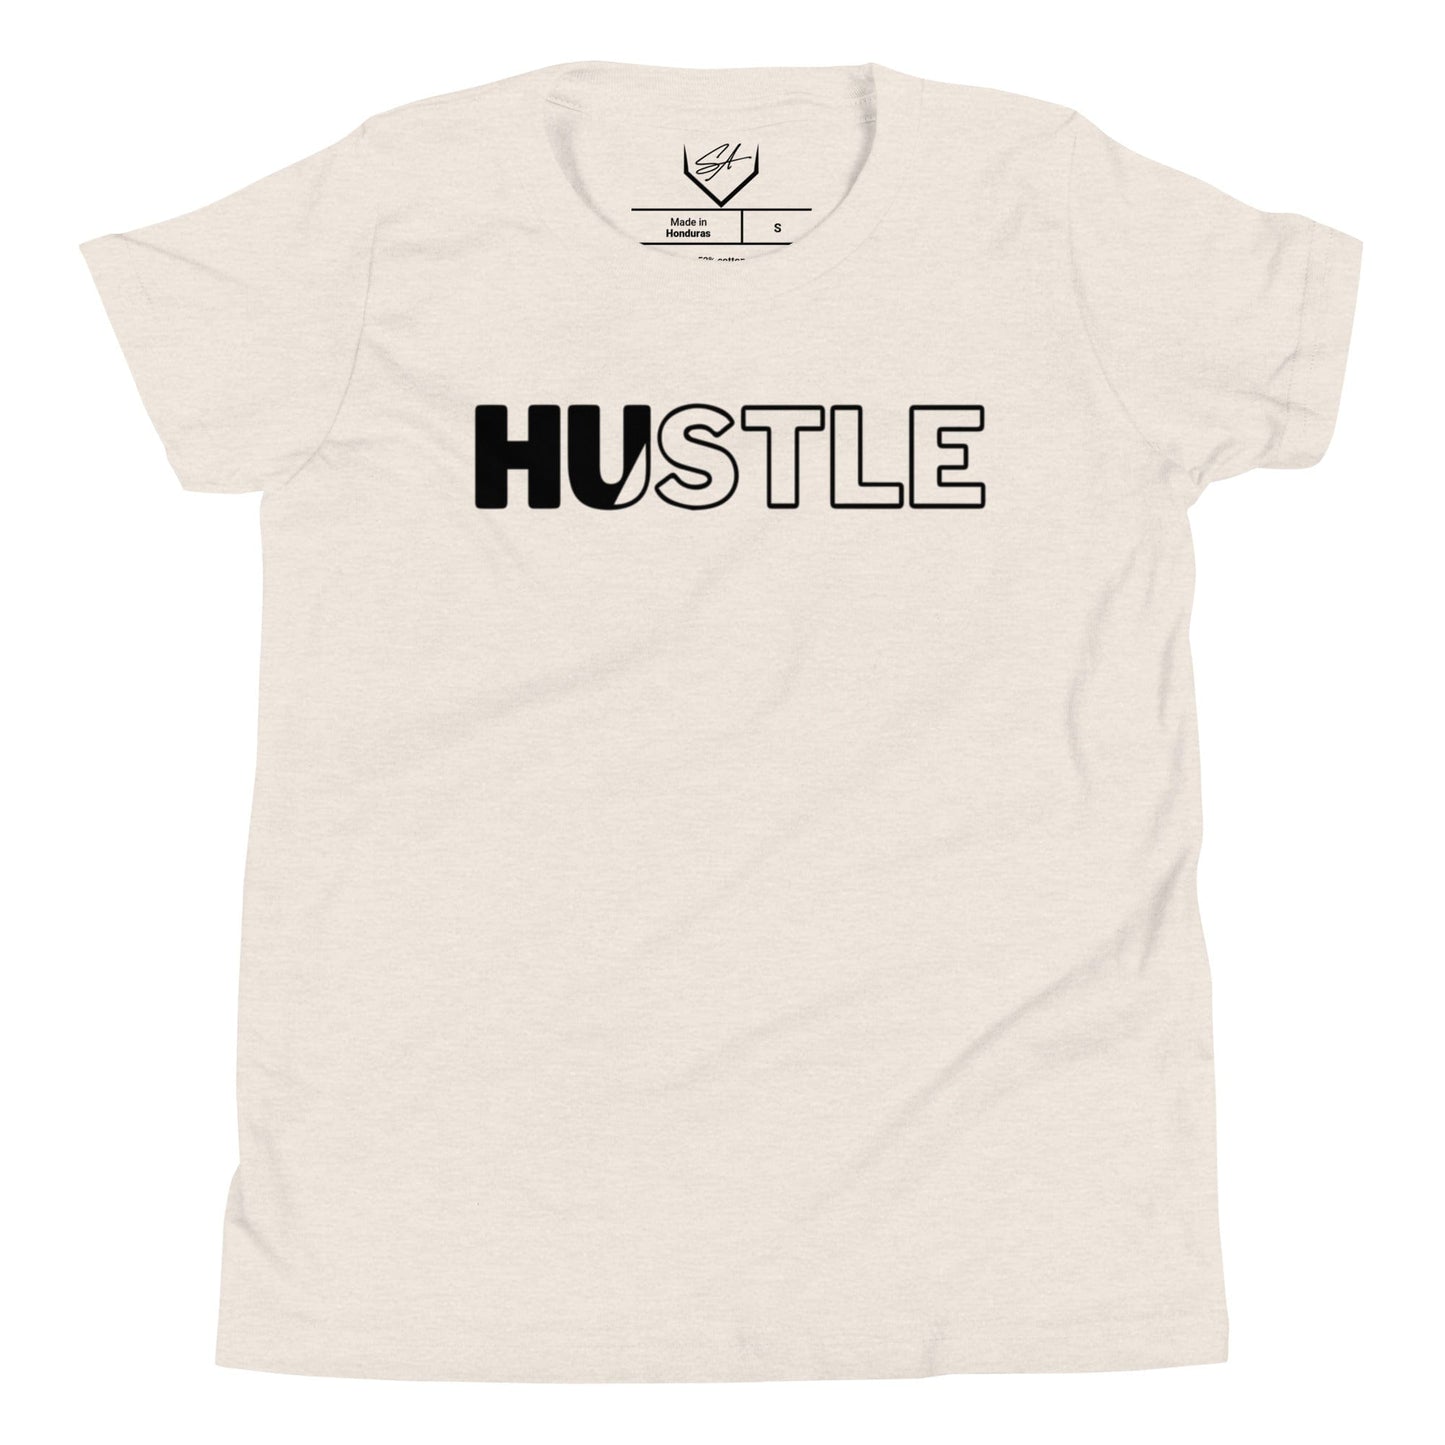 Hustle - Youth Tee